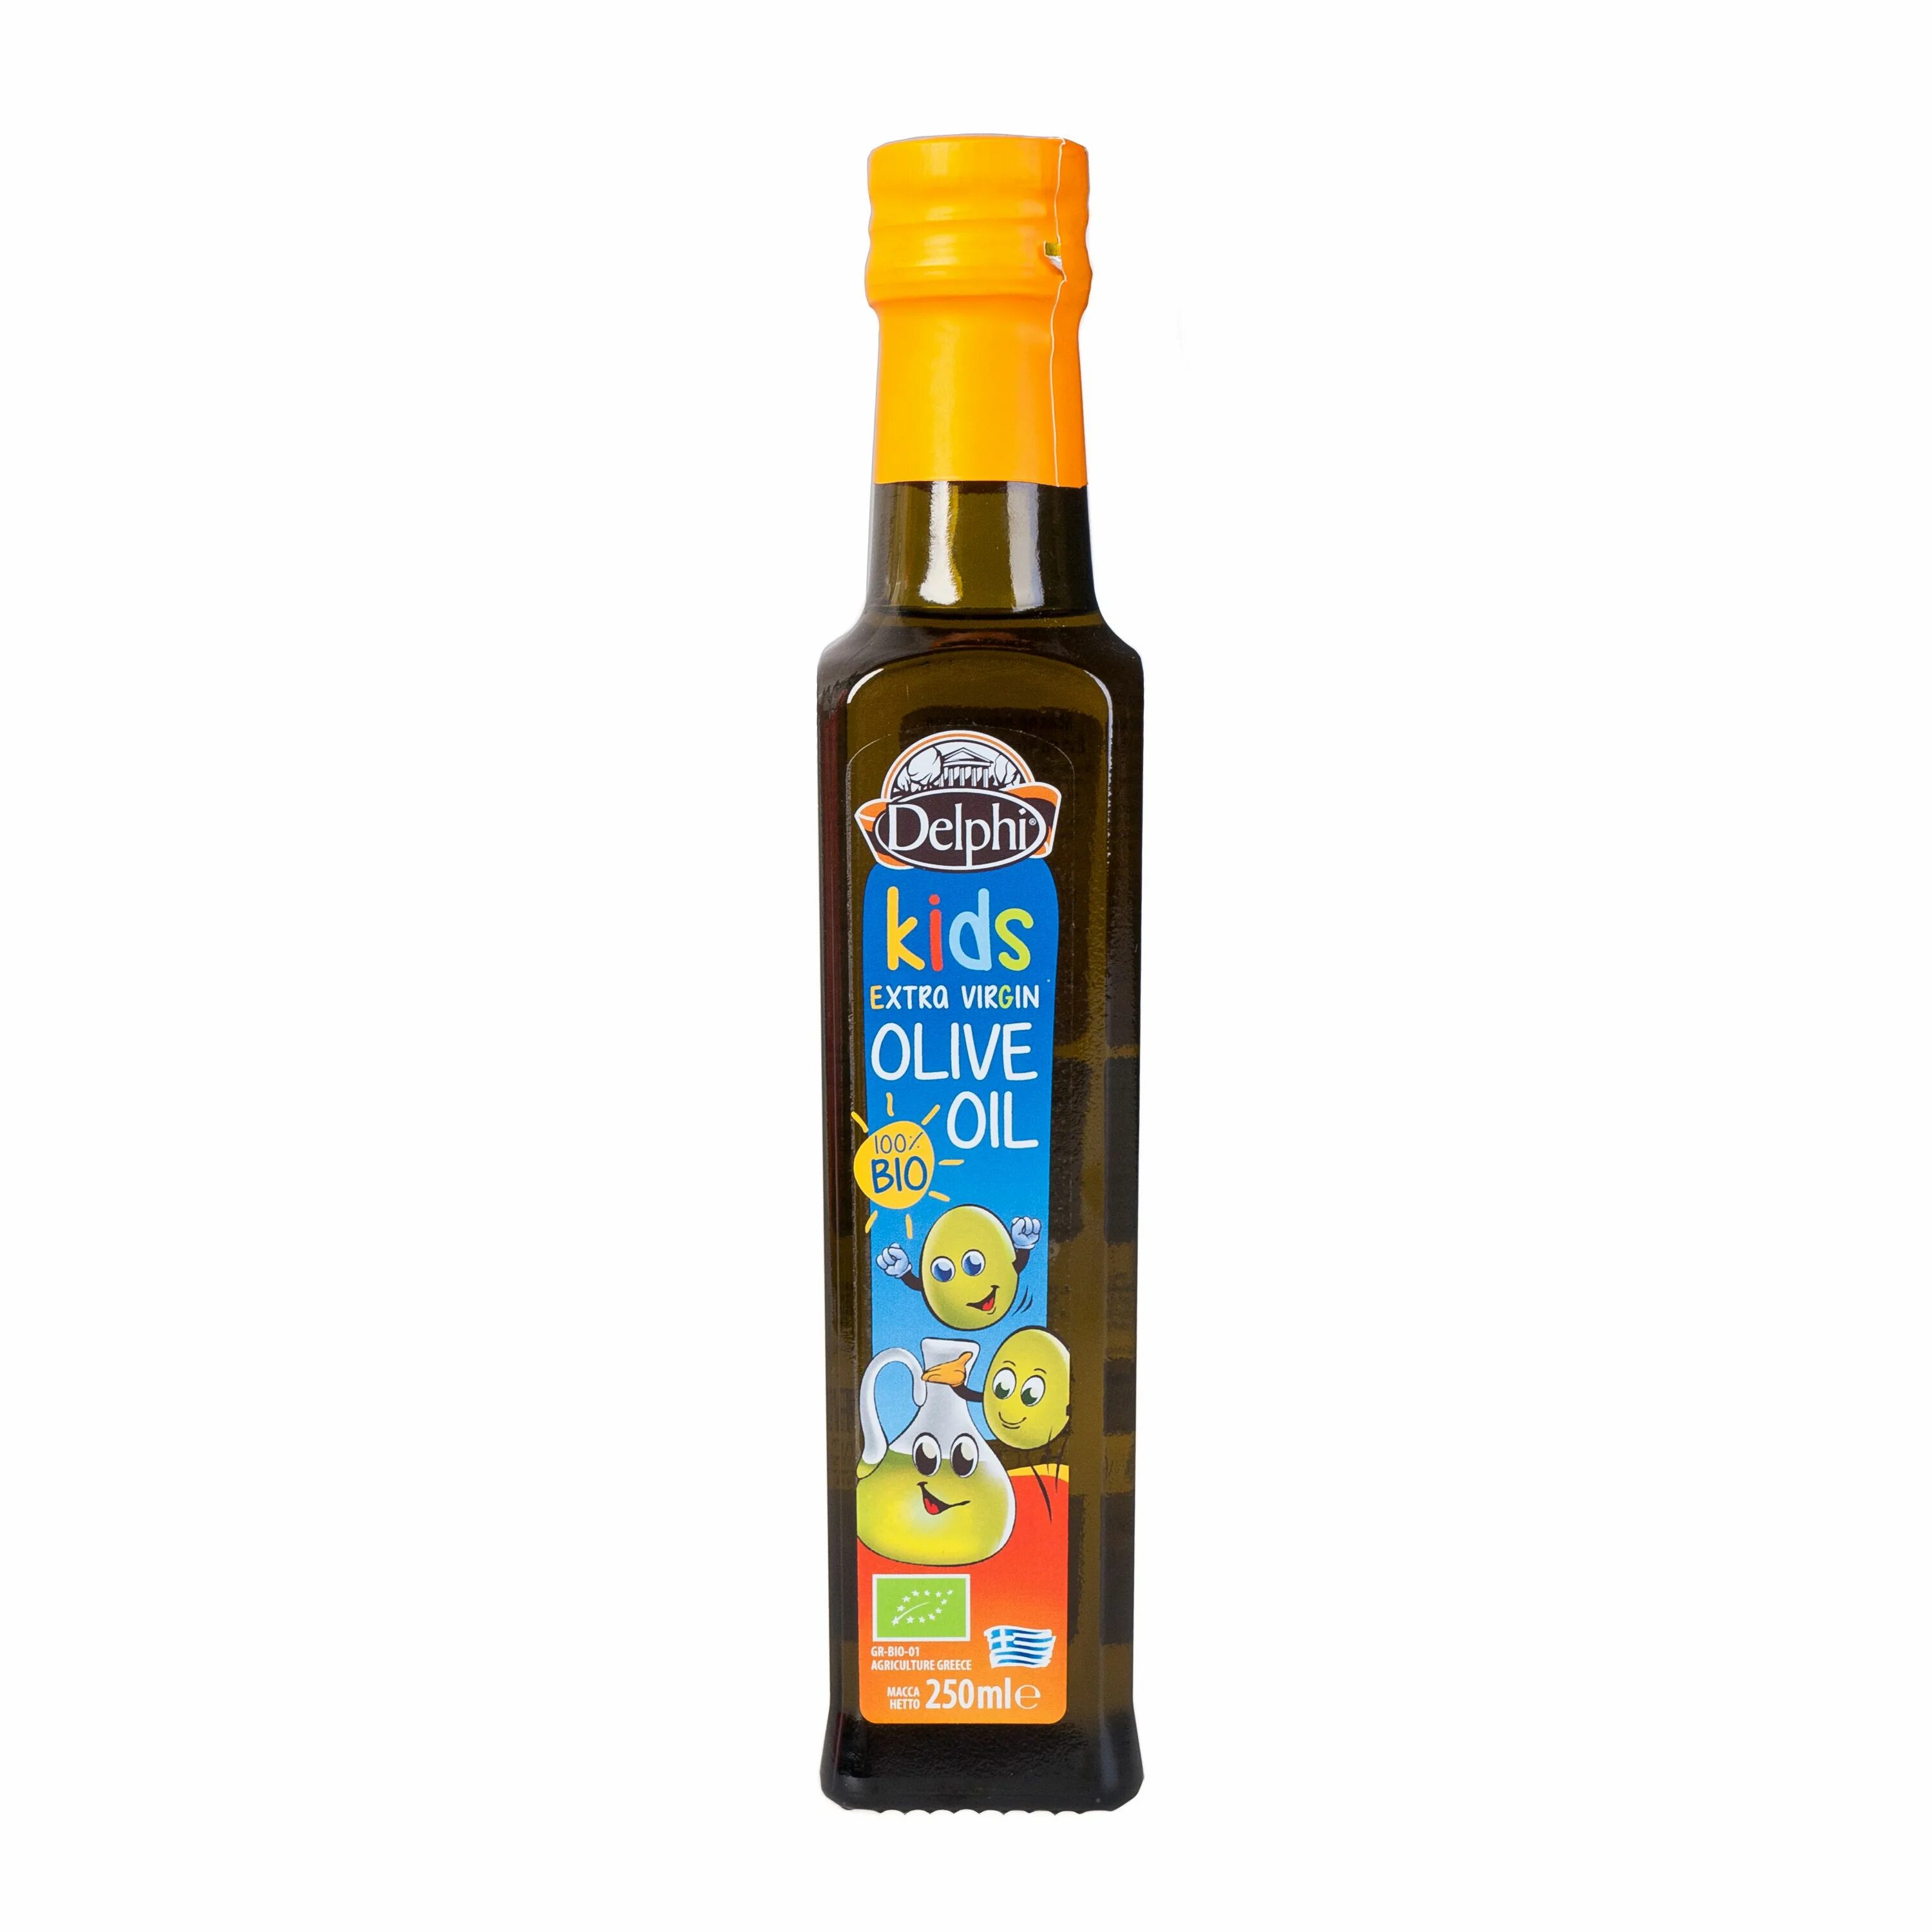 Оливковое масло е. Масло оливковое e.v. био Kids DELPHI 0,25 Л. Масло оливковое Extra Virgin Olive Oil DELPHI 0,25л. Масло оливковое DELPHI С Крита ст/б 250мл. DELPHI масло оливковое Extra Virgin нерафинированное.